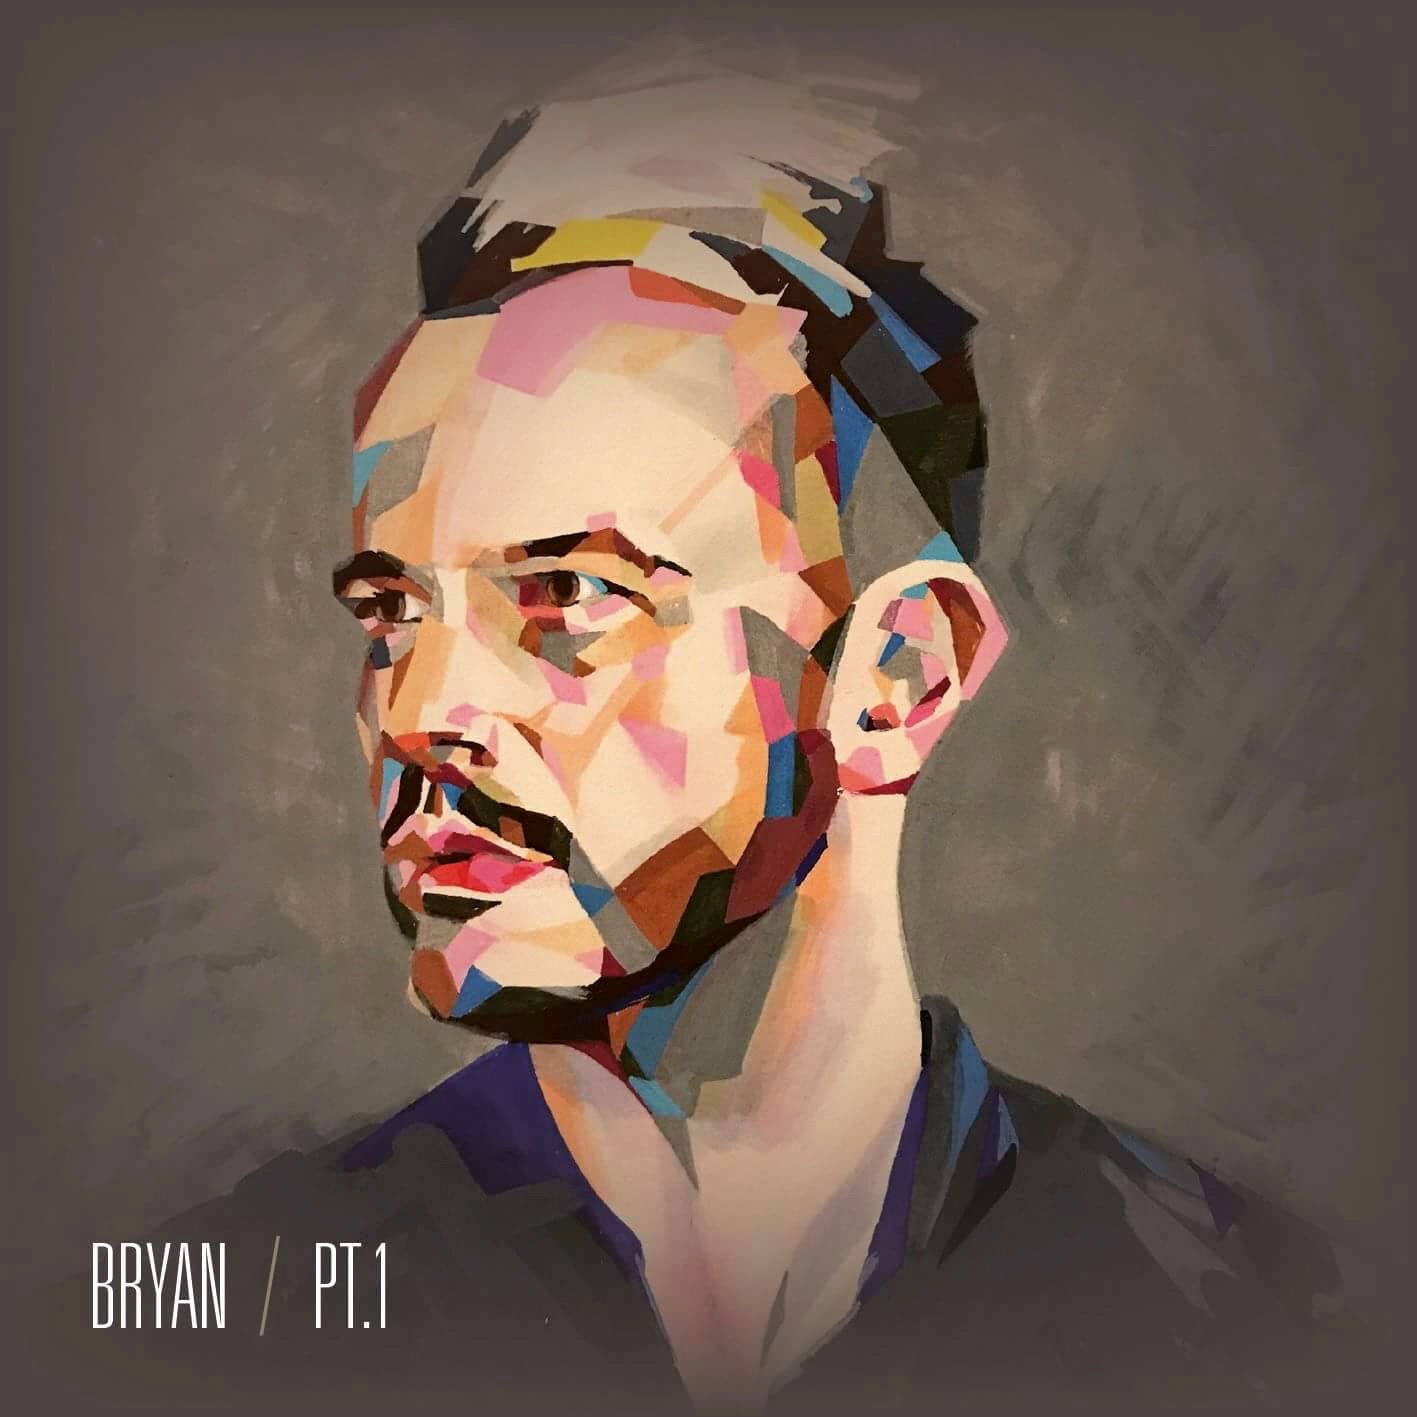 Bryan Rice har udgivet EP´en BRYAN / PT. 1